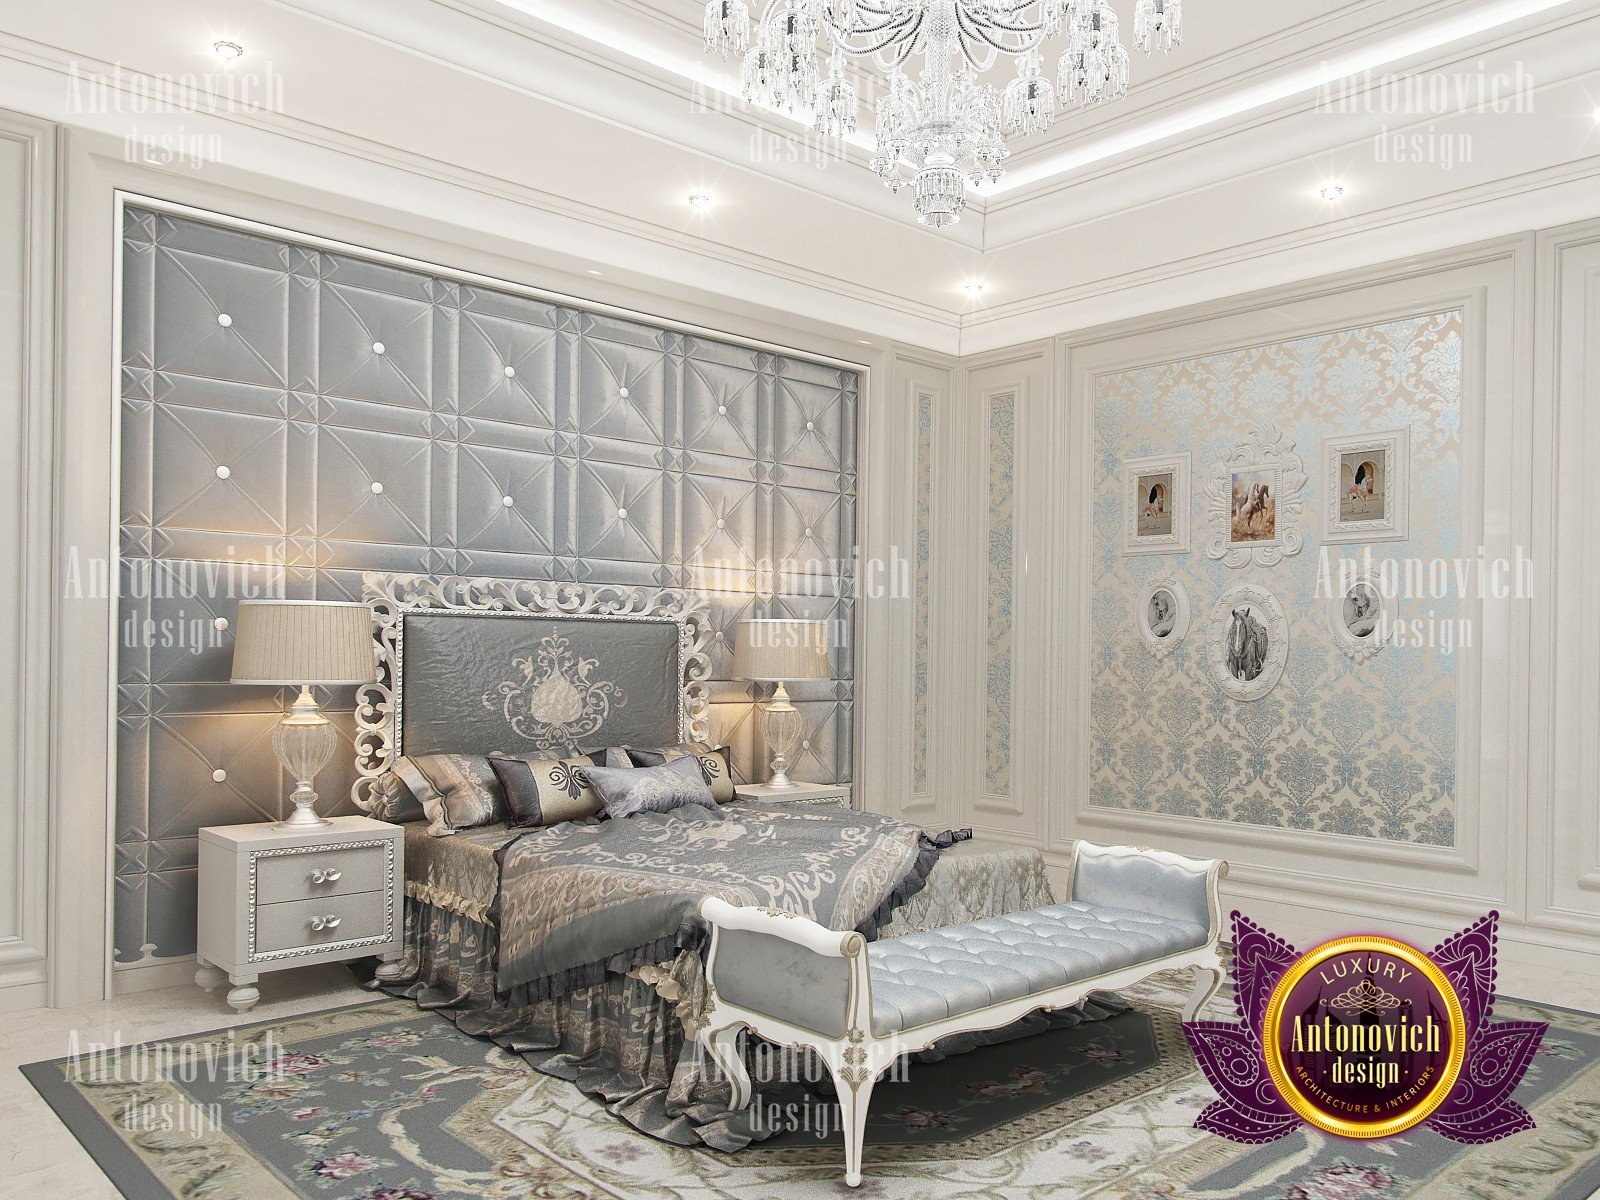 Luxury Italian Bedroom Furniture Nigeria